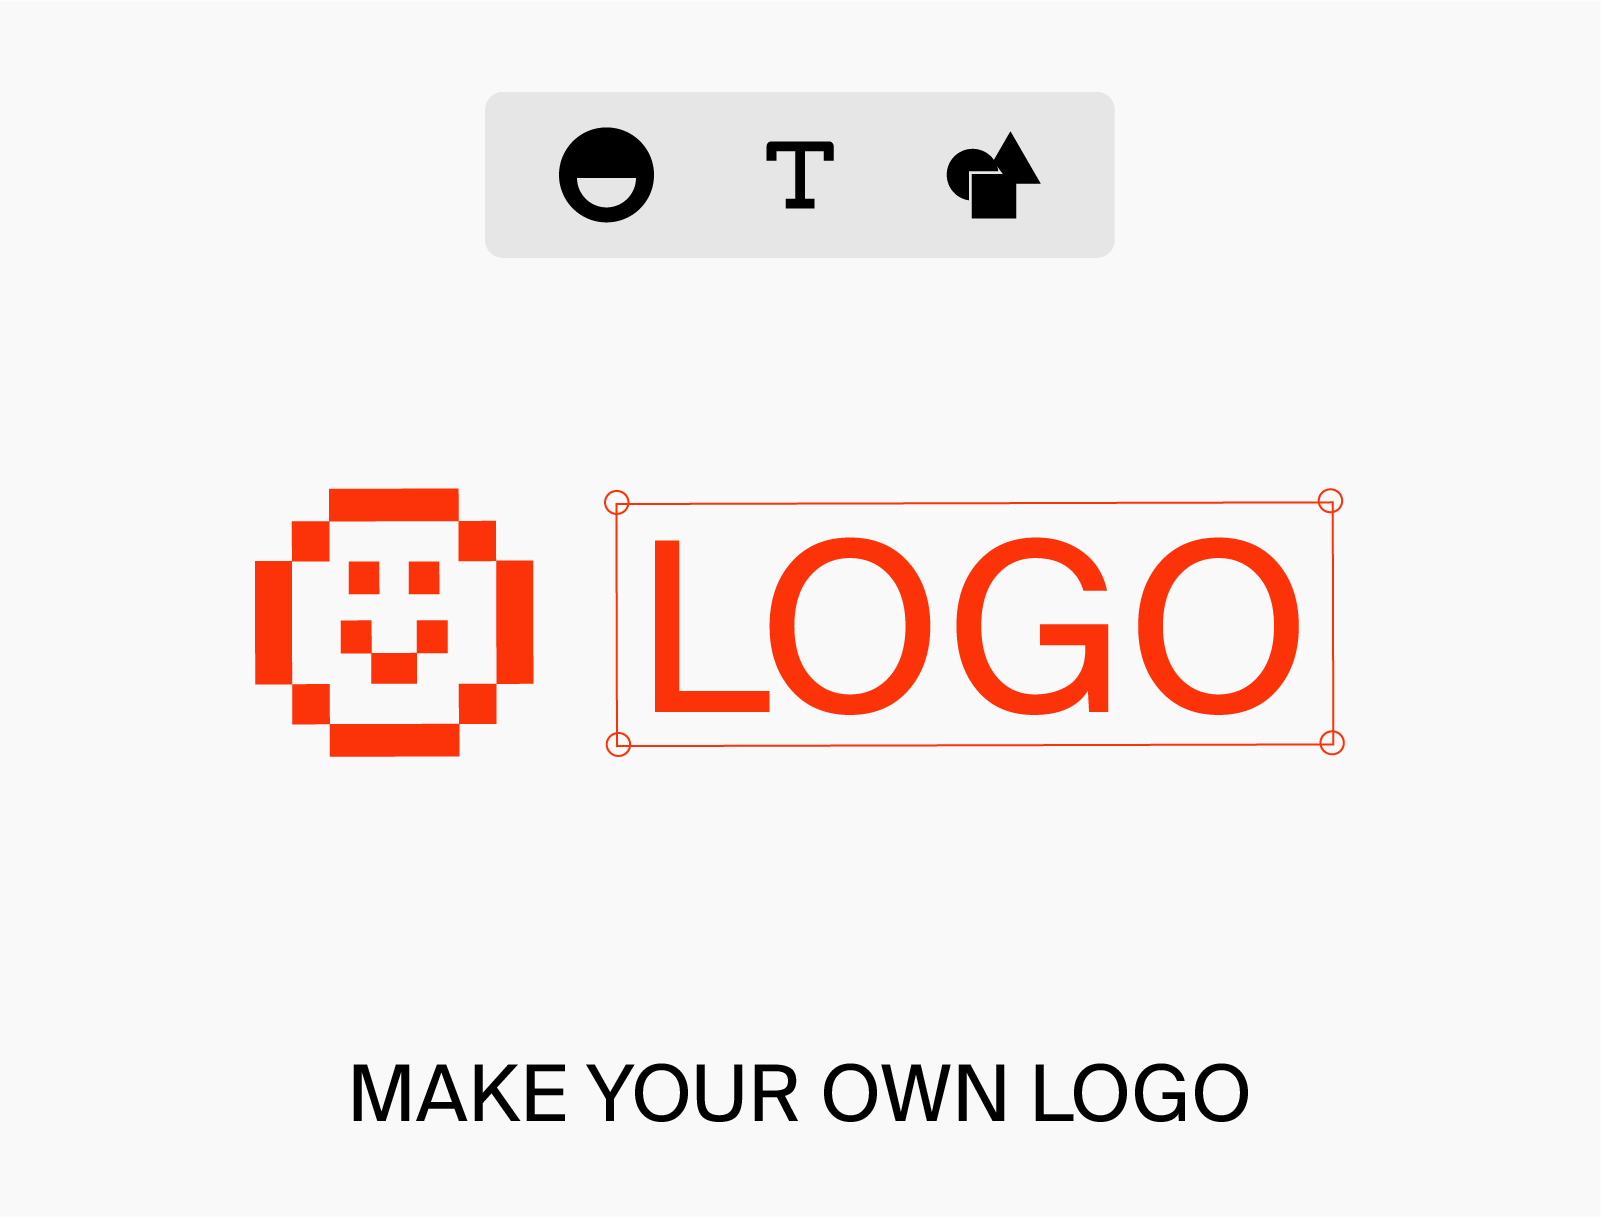 Làm logo miễn phí với Ucraft - Lasa.vn